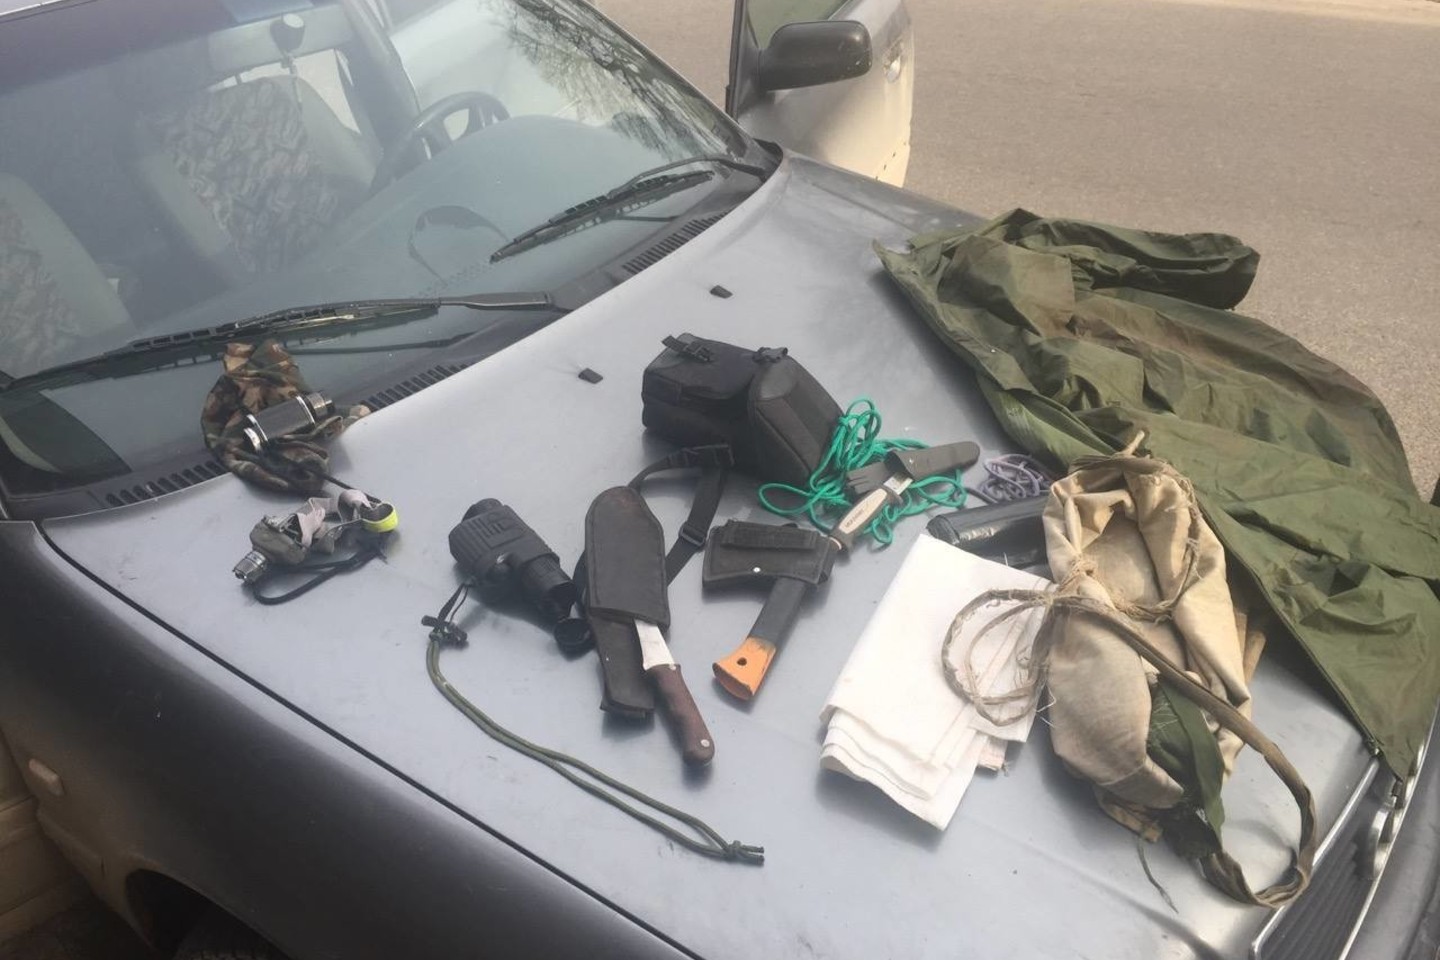 Pareigūnams sustabdžius įtarimą sukėlusį automobilį, paaiškėjo, kad jo bagažinėje buvo paslėptas neteisėtai sumedžiotas elnias bei medžioklės įtaisai.<br>policija.lt nuotr.